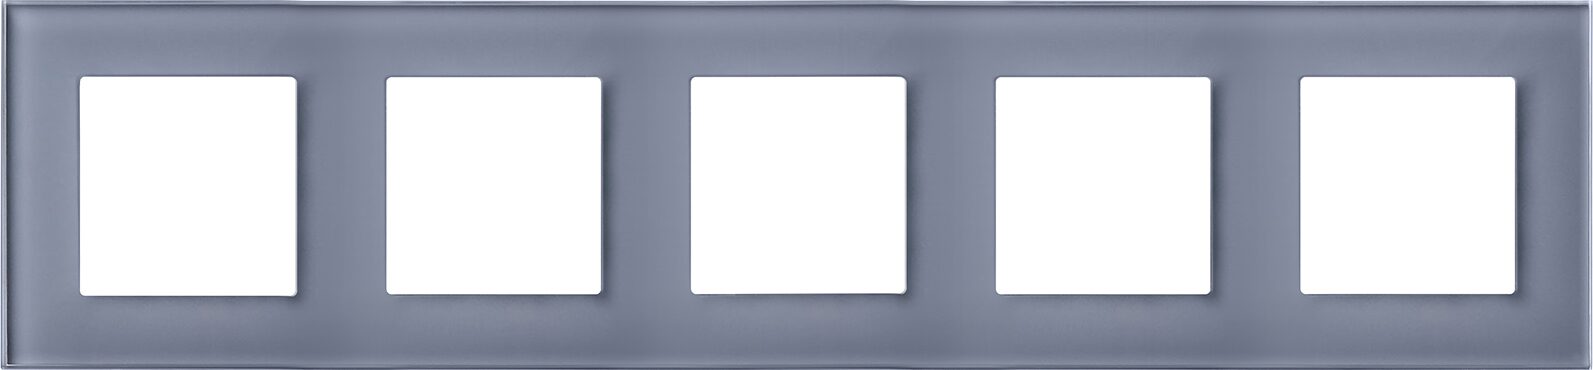 Рамка пятипостовая горизонтальная/вертикальная стеклянная cерая платина "Эстетика" GL-P105-GPG